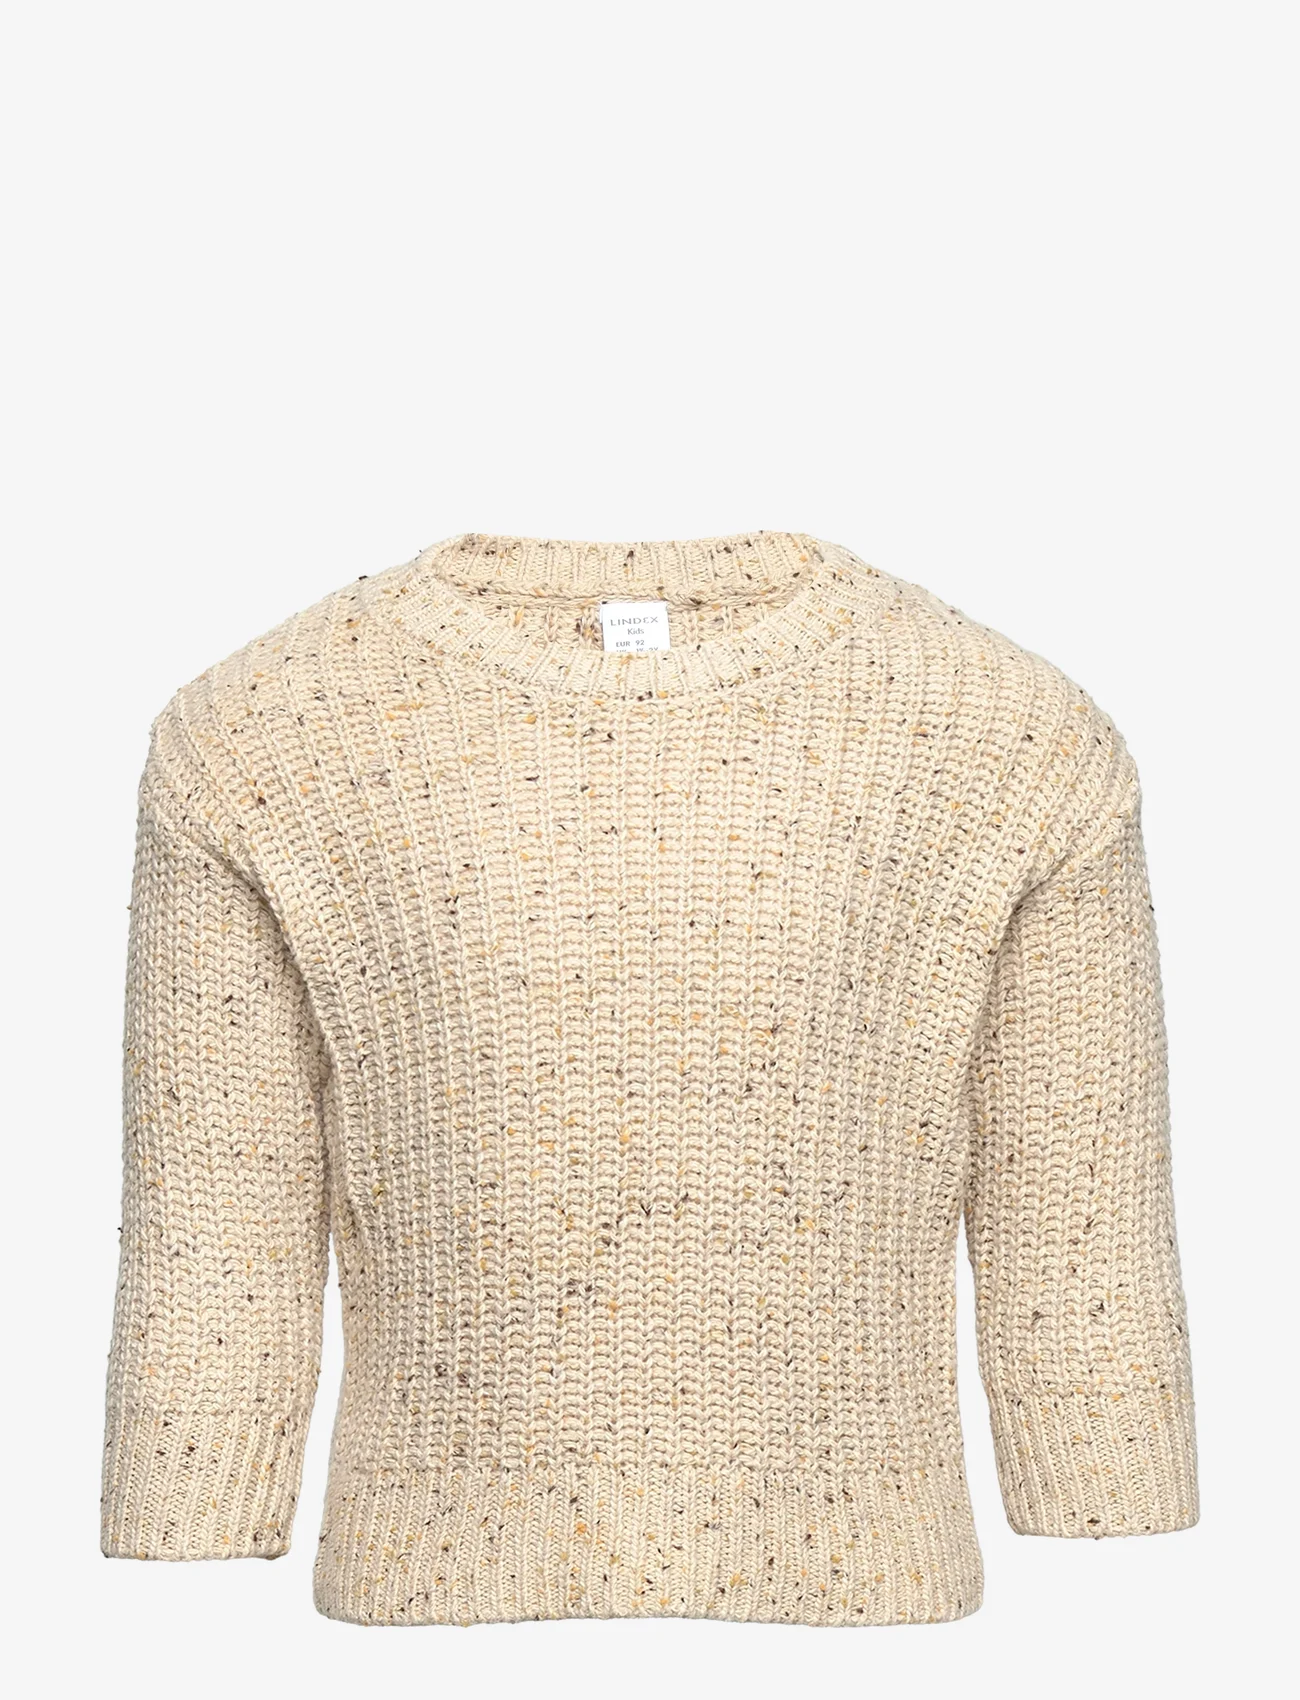 Lindex - Sweater knitted melange - jumpers - light beige - 0